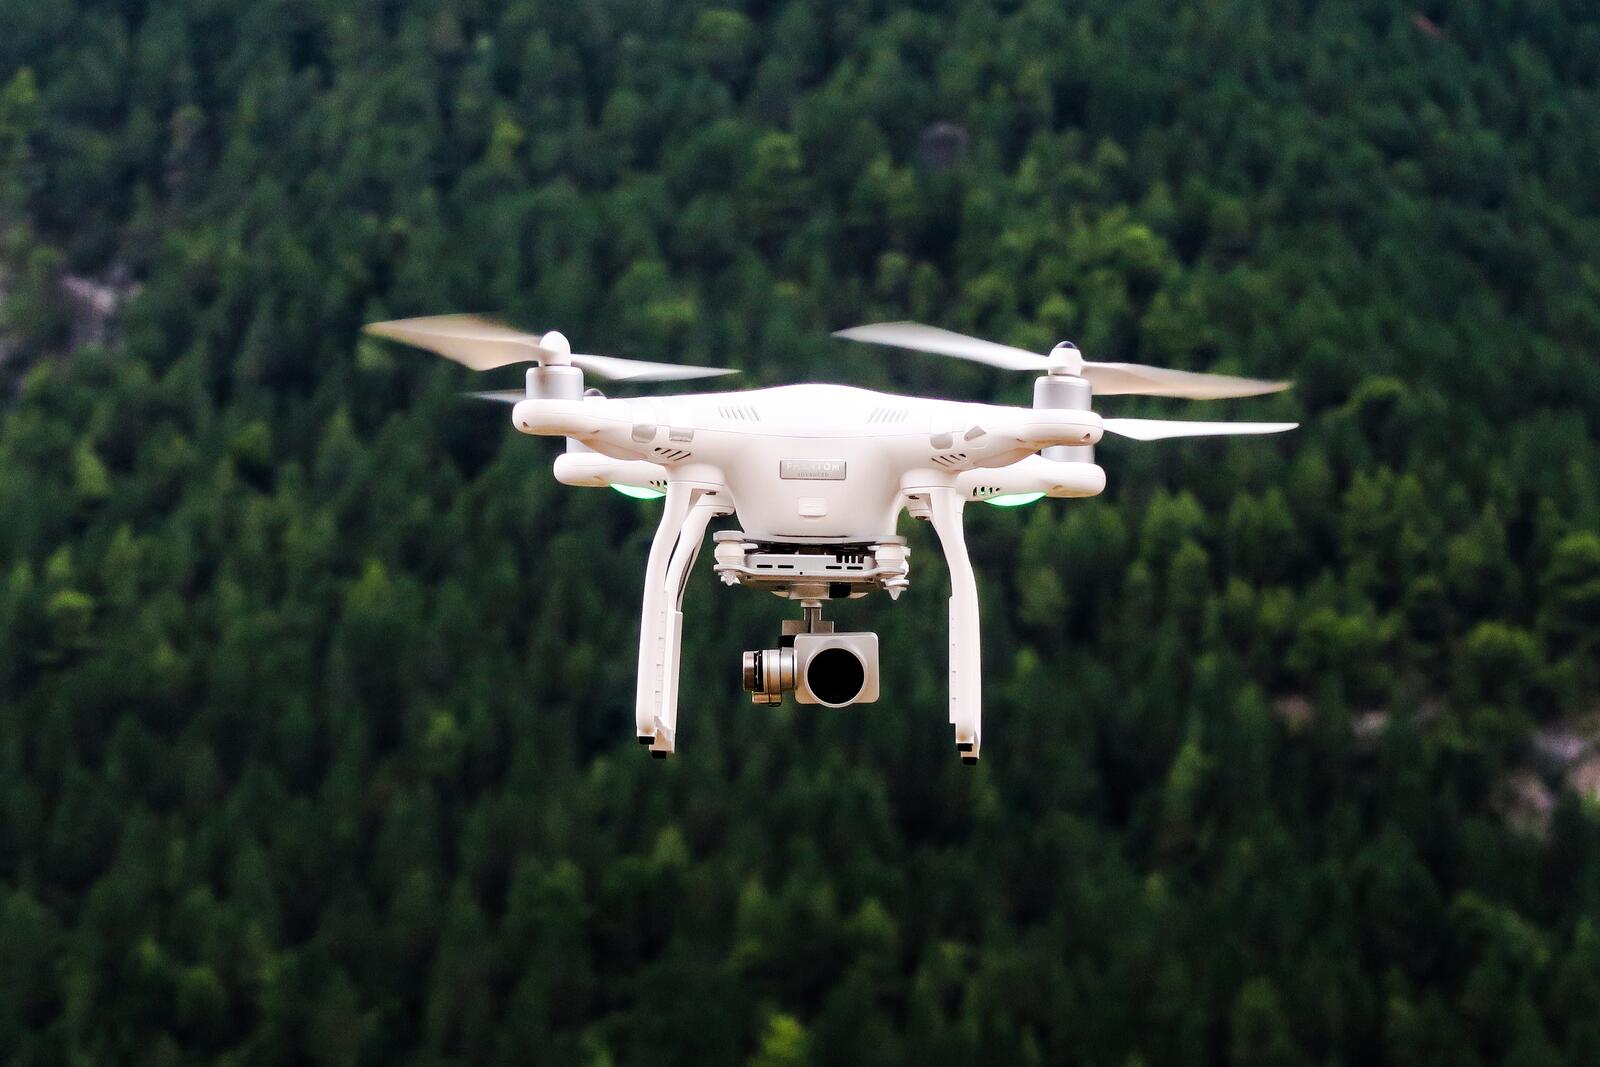 免费照片一架四旋翼飞行器从树林上空飞过。